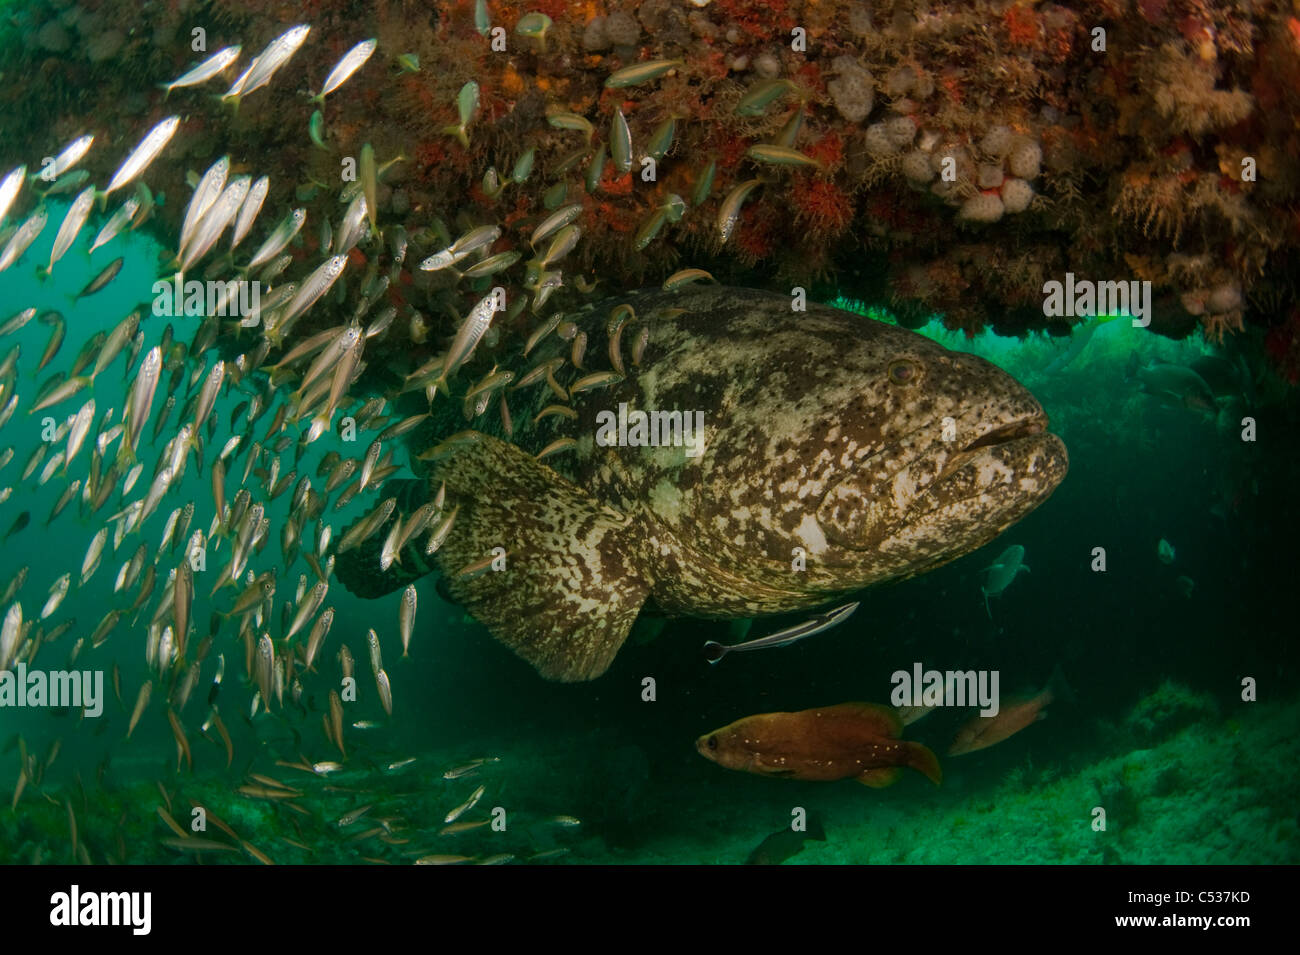 Goliath le mérou Epinephelus itajara photographié au large sous-marine Palm Beach, en Floride pendant la saison de frai. En voie de disparition Banque D'Images